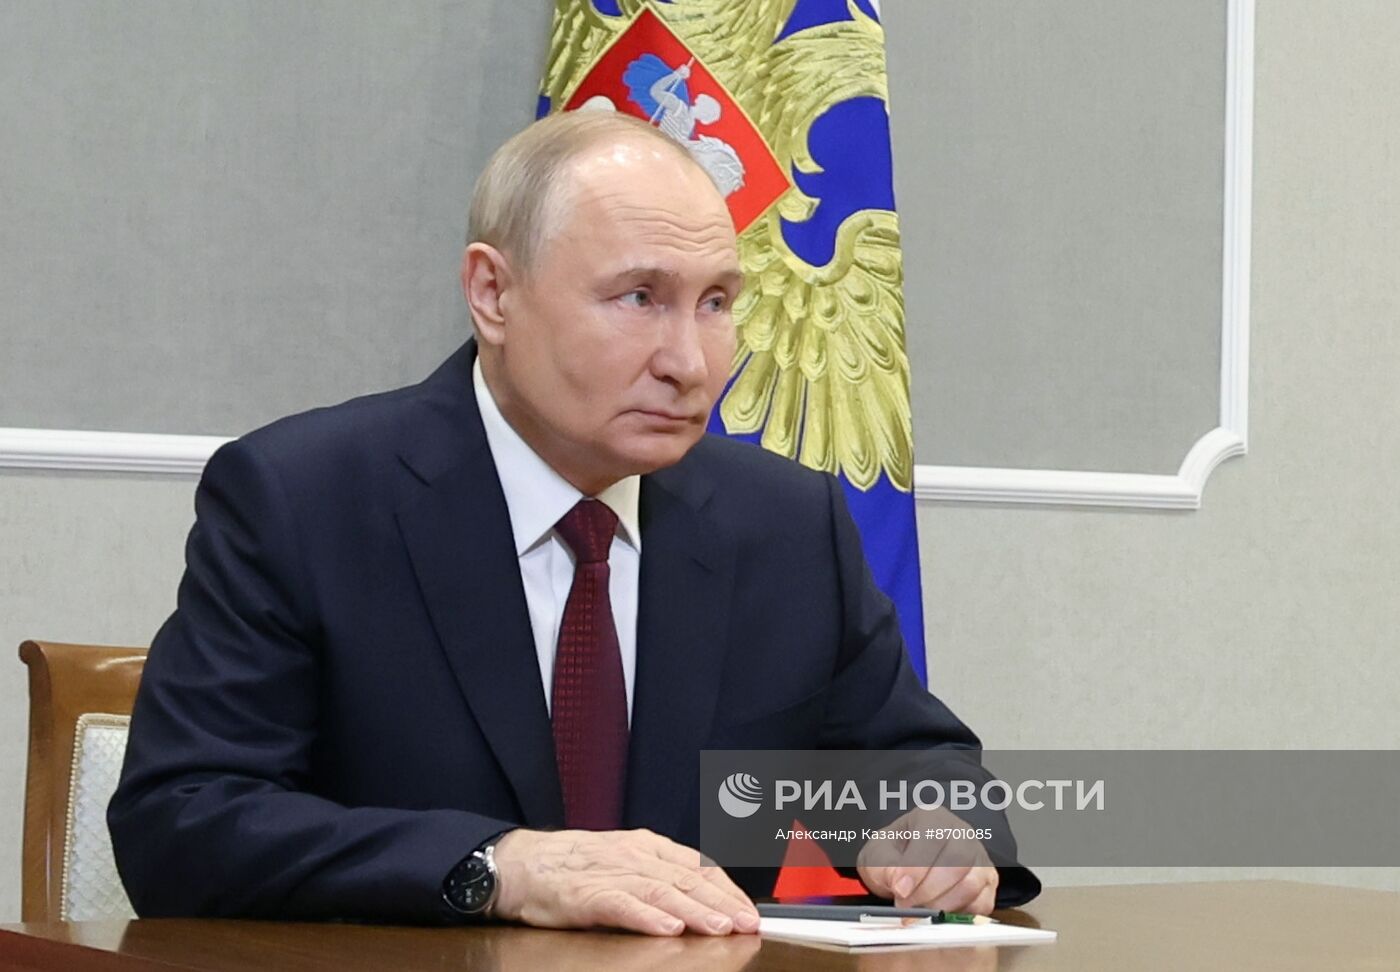  Президент Владимир Путин провел рабочую встречу с губернатором Санкт-Петербурга Александром Бегловым